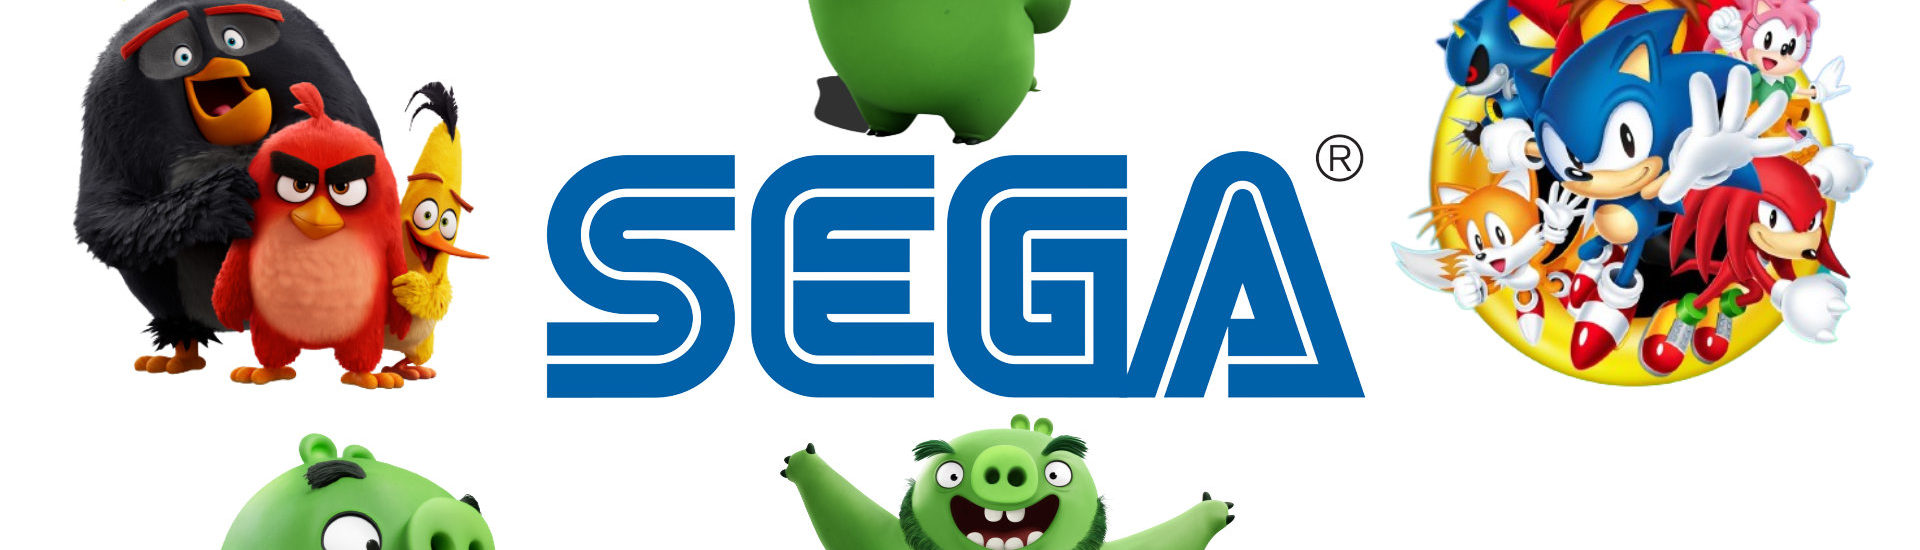 Sega: Angry Birds werden Teil der Sega-Familie